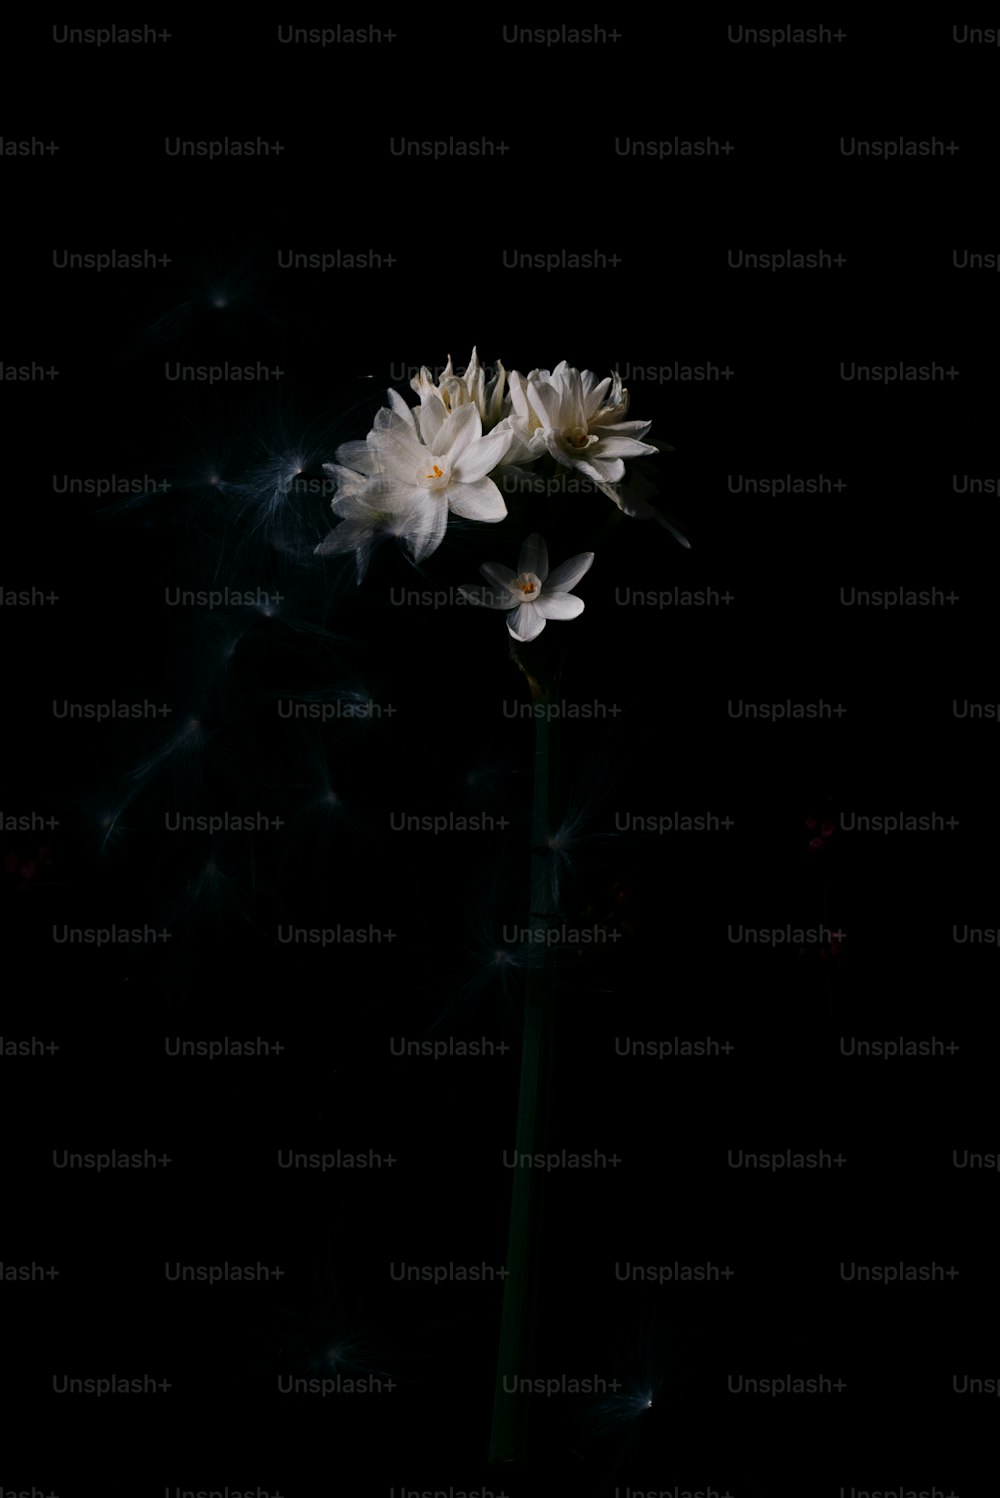 어두운 방에 하얀 꽃 한 송이